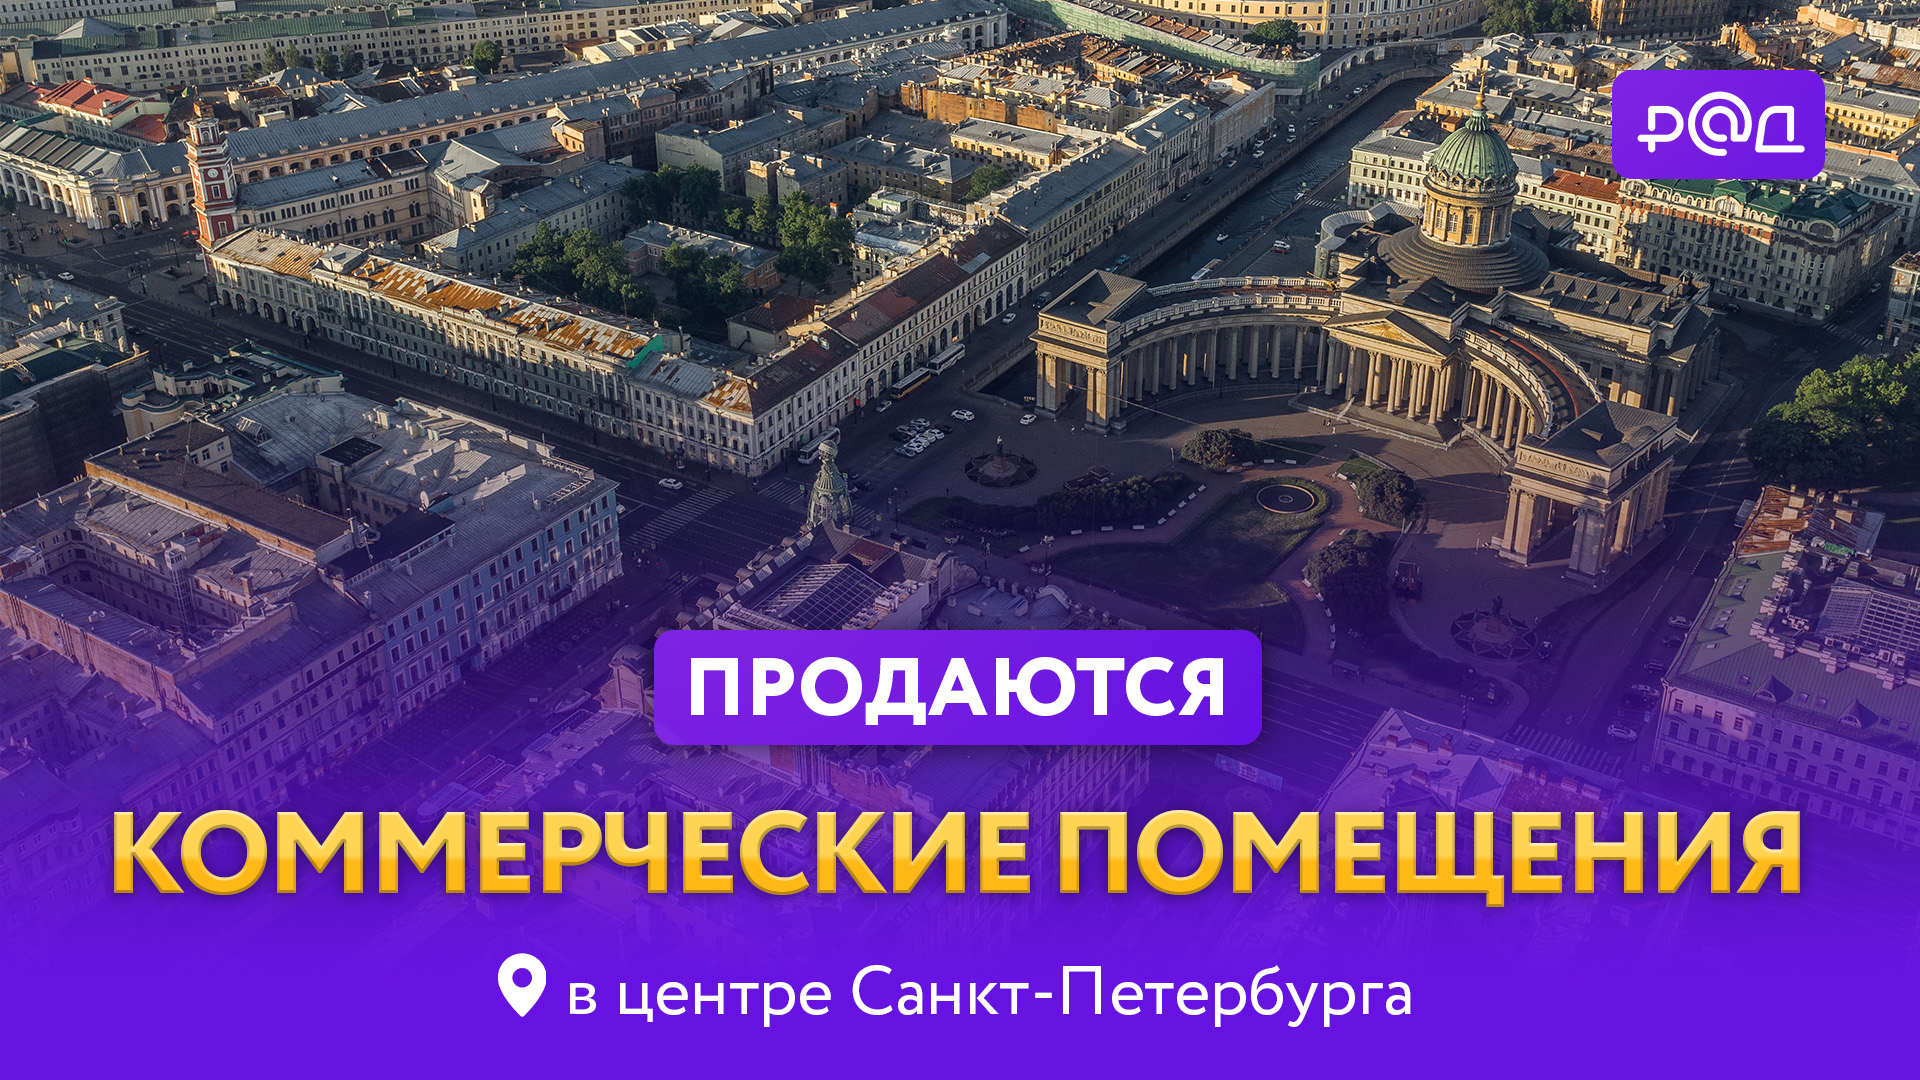 Продаются коммерческие помещения в центре Санкт-Петербурга